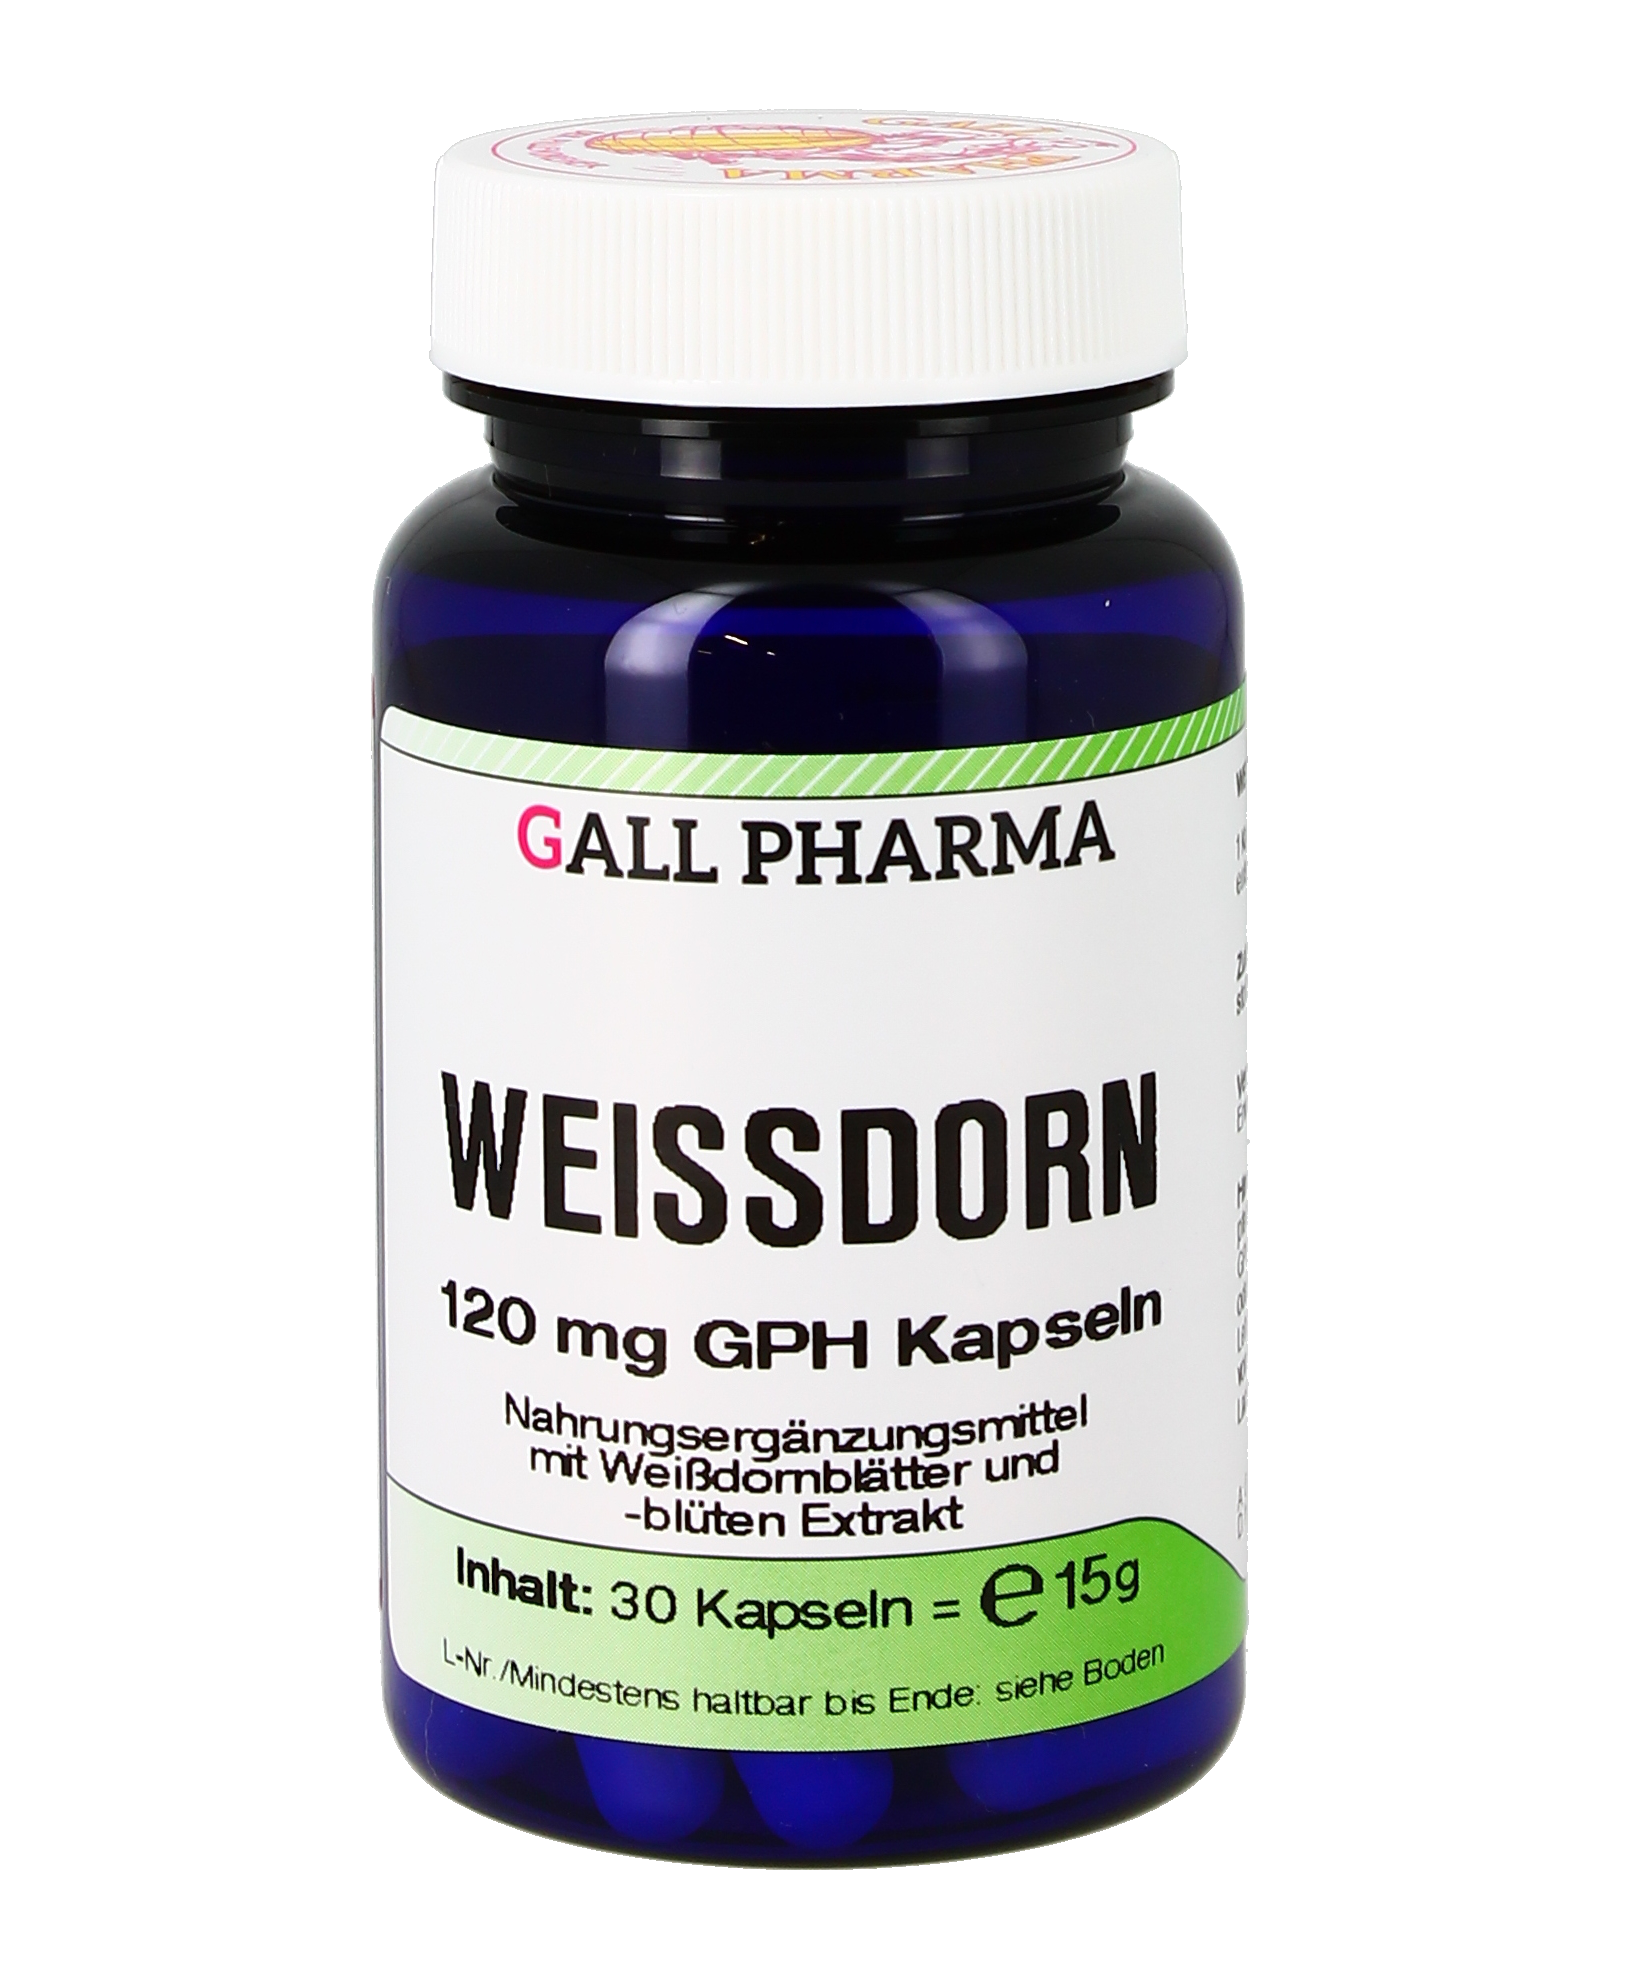 Weissdorn 120 mg GPH Kapseln